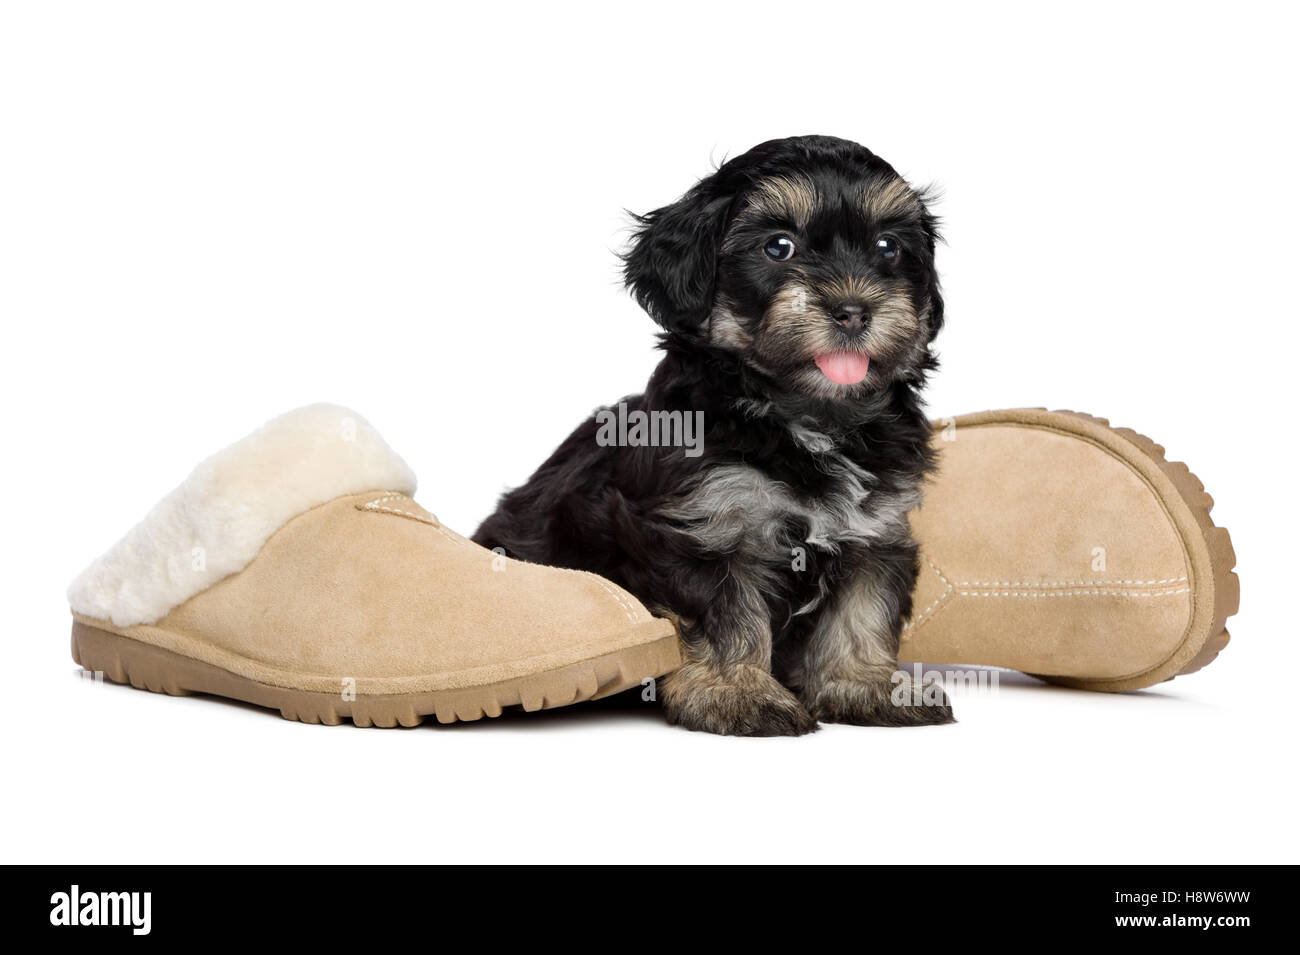 Pantofole per animali immagini e fotografie stock ad alta risoluzione -  Alamy